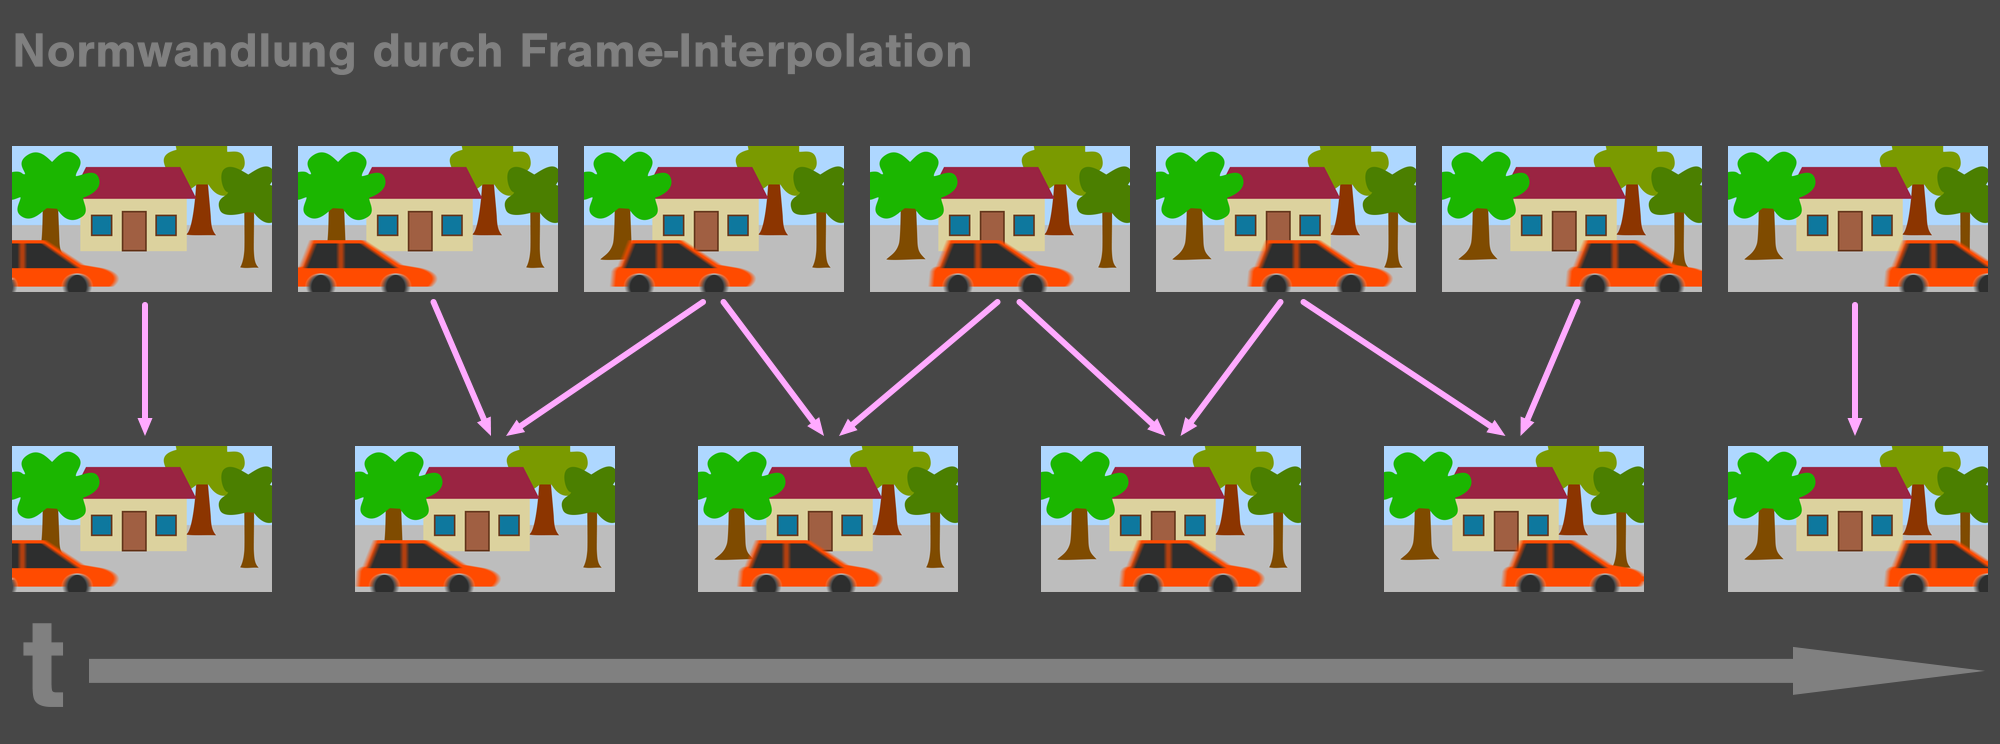 Schema Frame-Interpolation